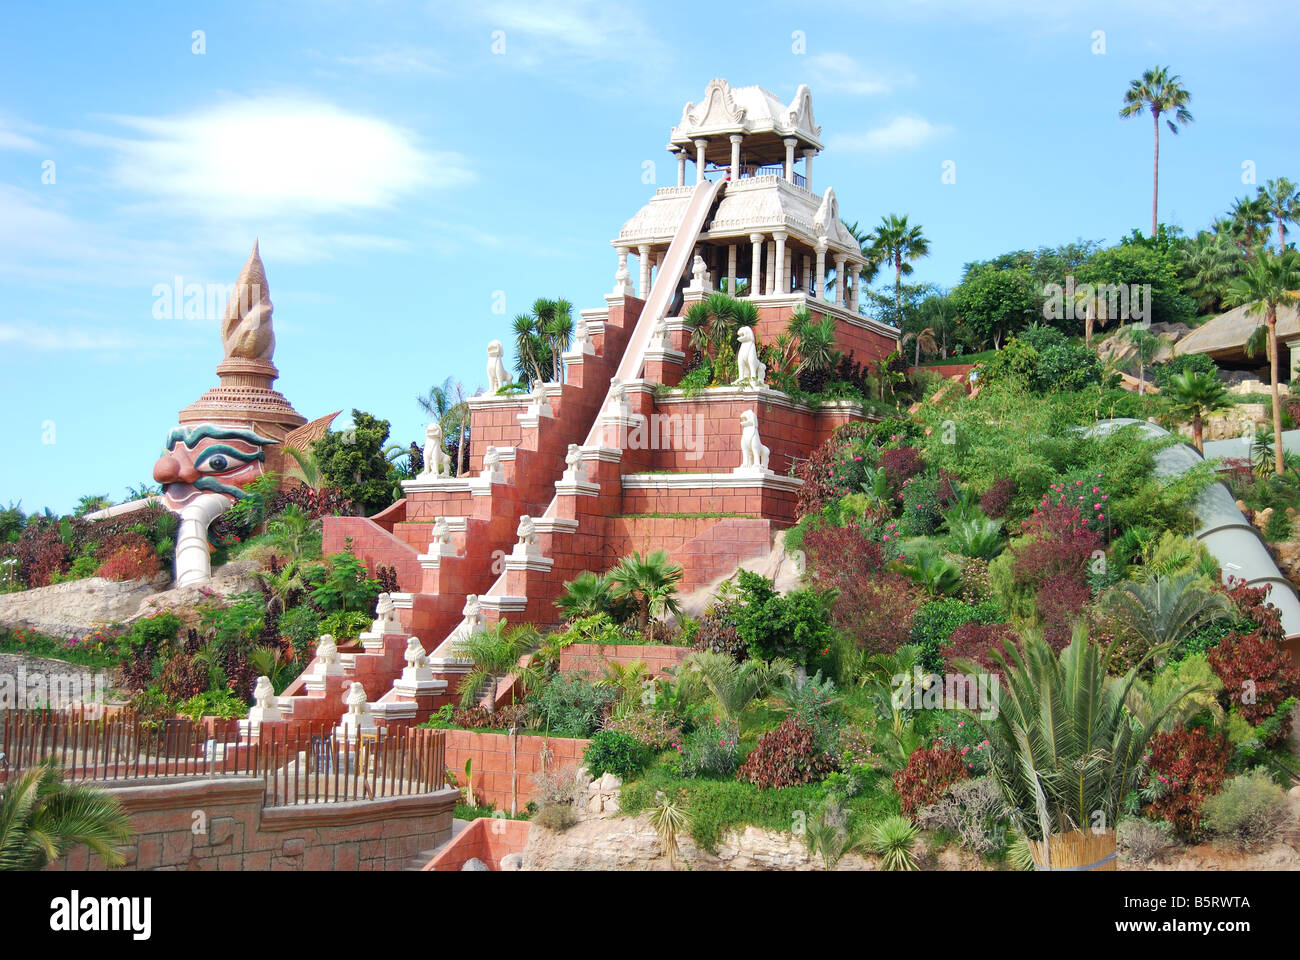 Tower of Power ride, le parc aquatique Siam Kingdom Theme Park, Costa Adeje, Tenerife, Canaries, Espagne Banque D'Images